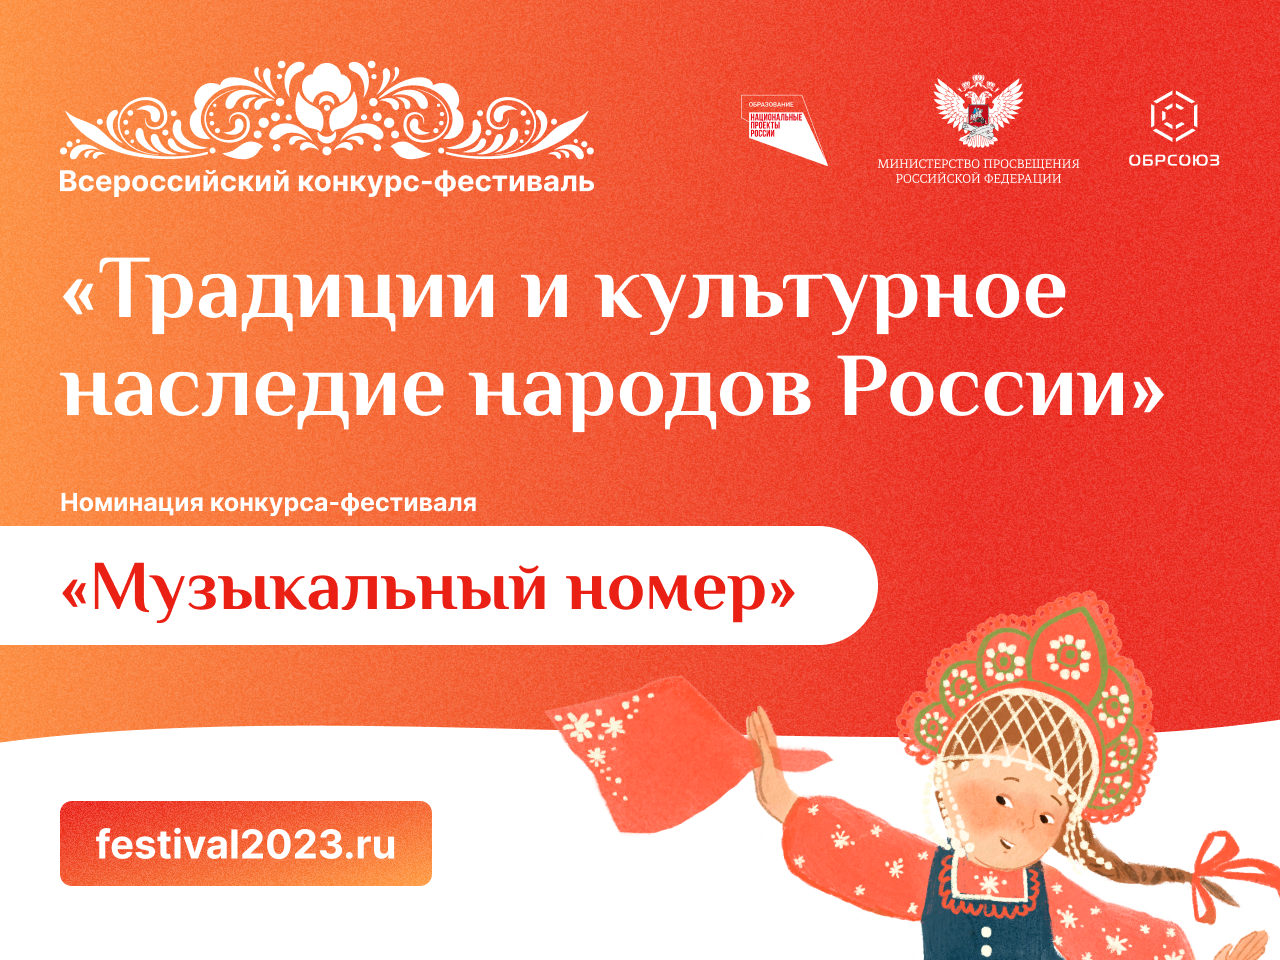 Друзья, впереди все лето, чтобы подготовить заявку на участие во Всероссийском конкурсе-фестивале «Традиции и культурное наследие народов России» для детей и подростков!